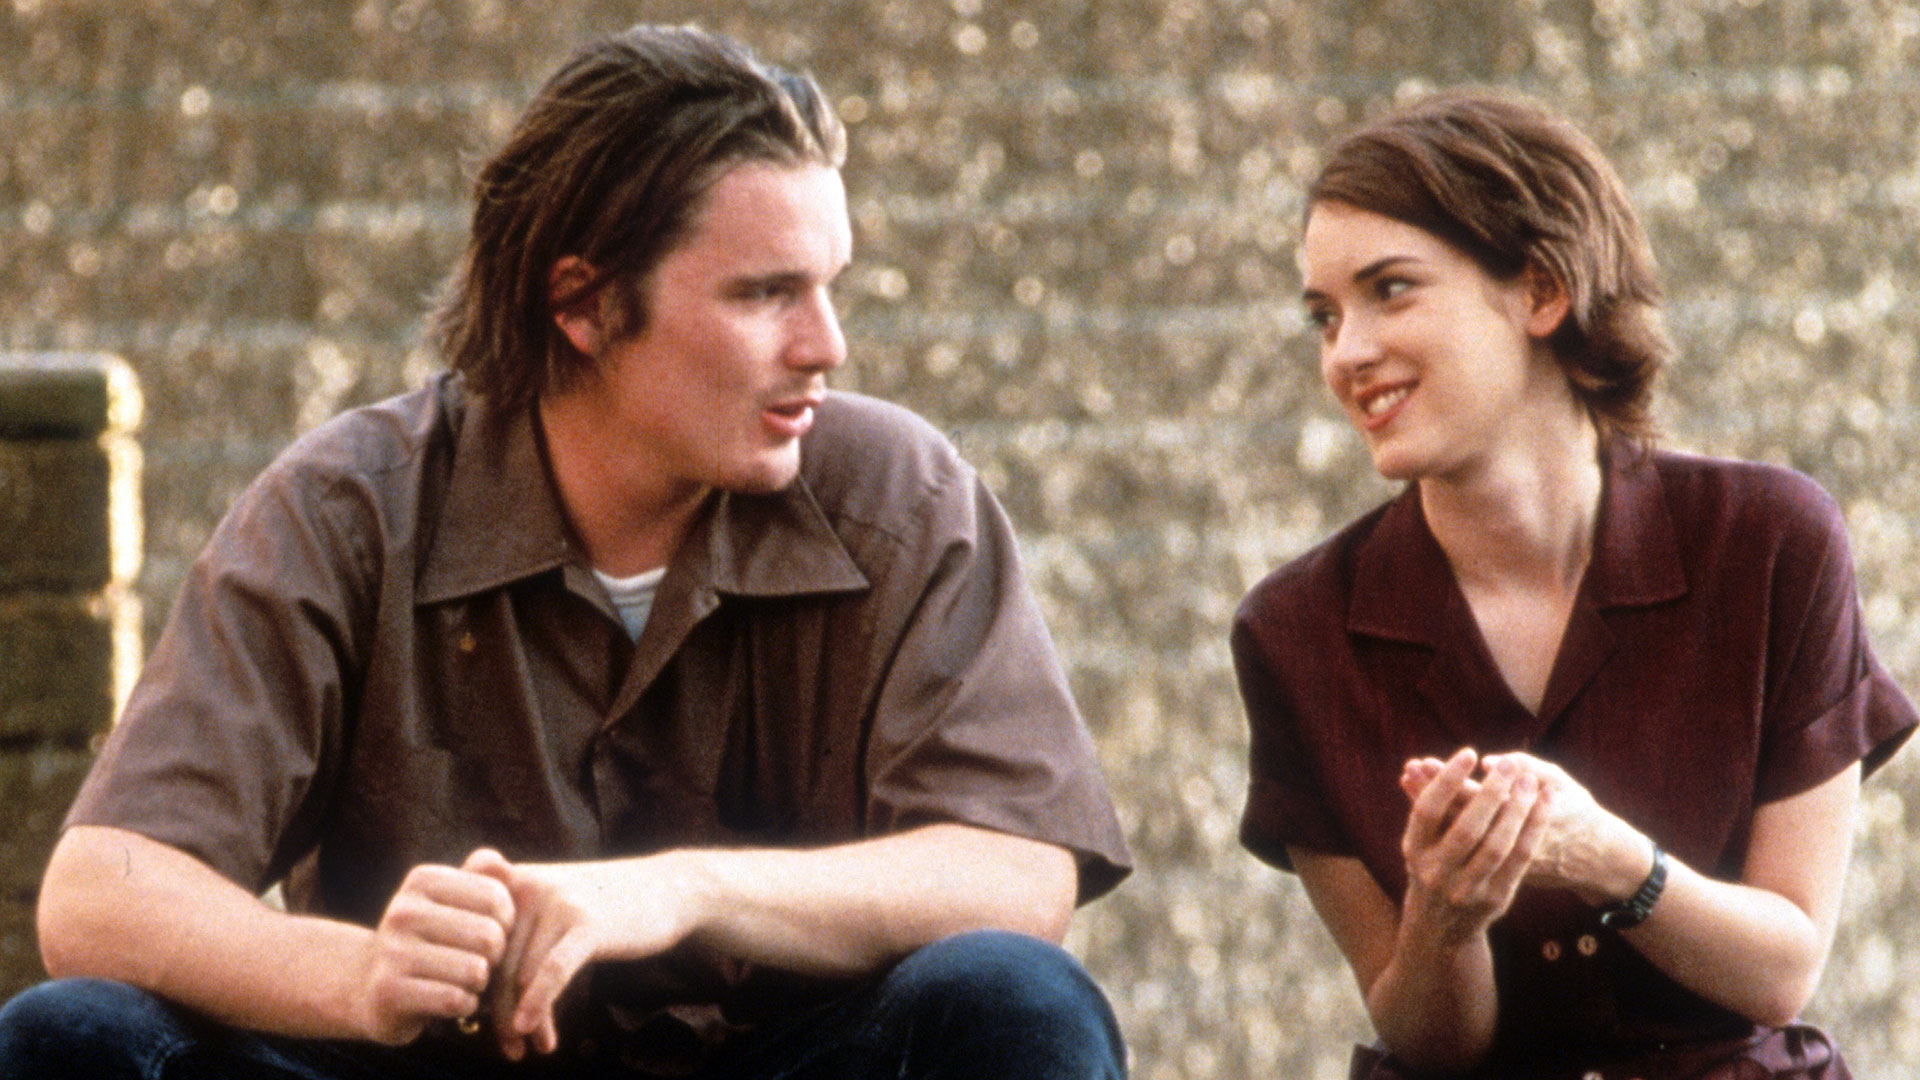 Ethan Hawke con Winona Ryder en la película "La realidad duele" de 1994, que marcó la juventud de muchos.  (Imágenes universales/Getty)